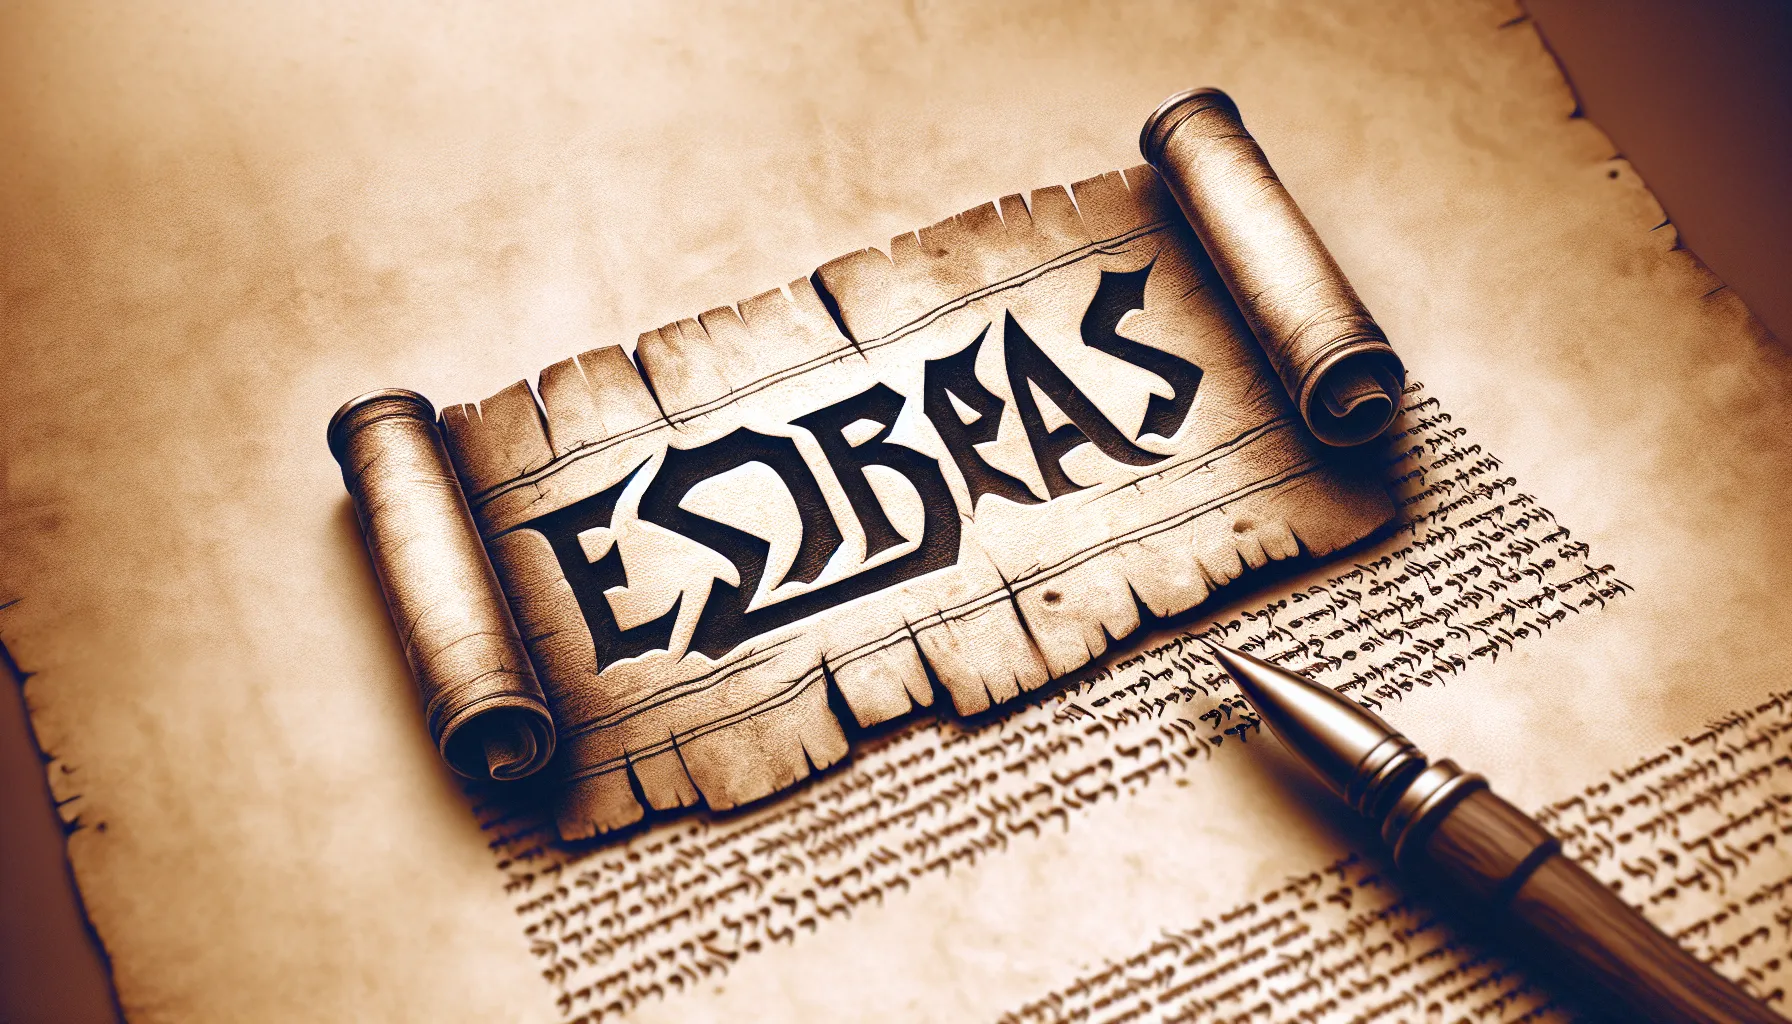 Imagen de un pergamino antiguo con el nombre Esdras destacado, simbolizando la relevancia histórica y religiosa de este personaje bíblico.